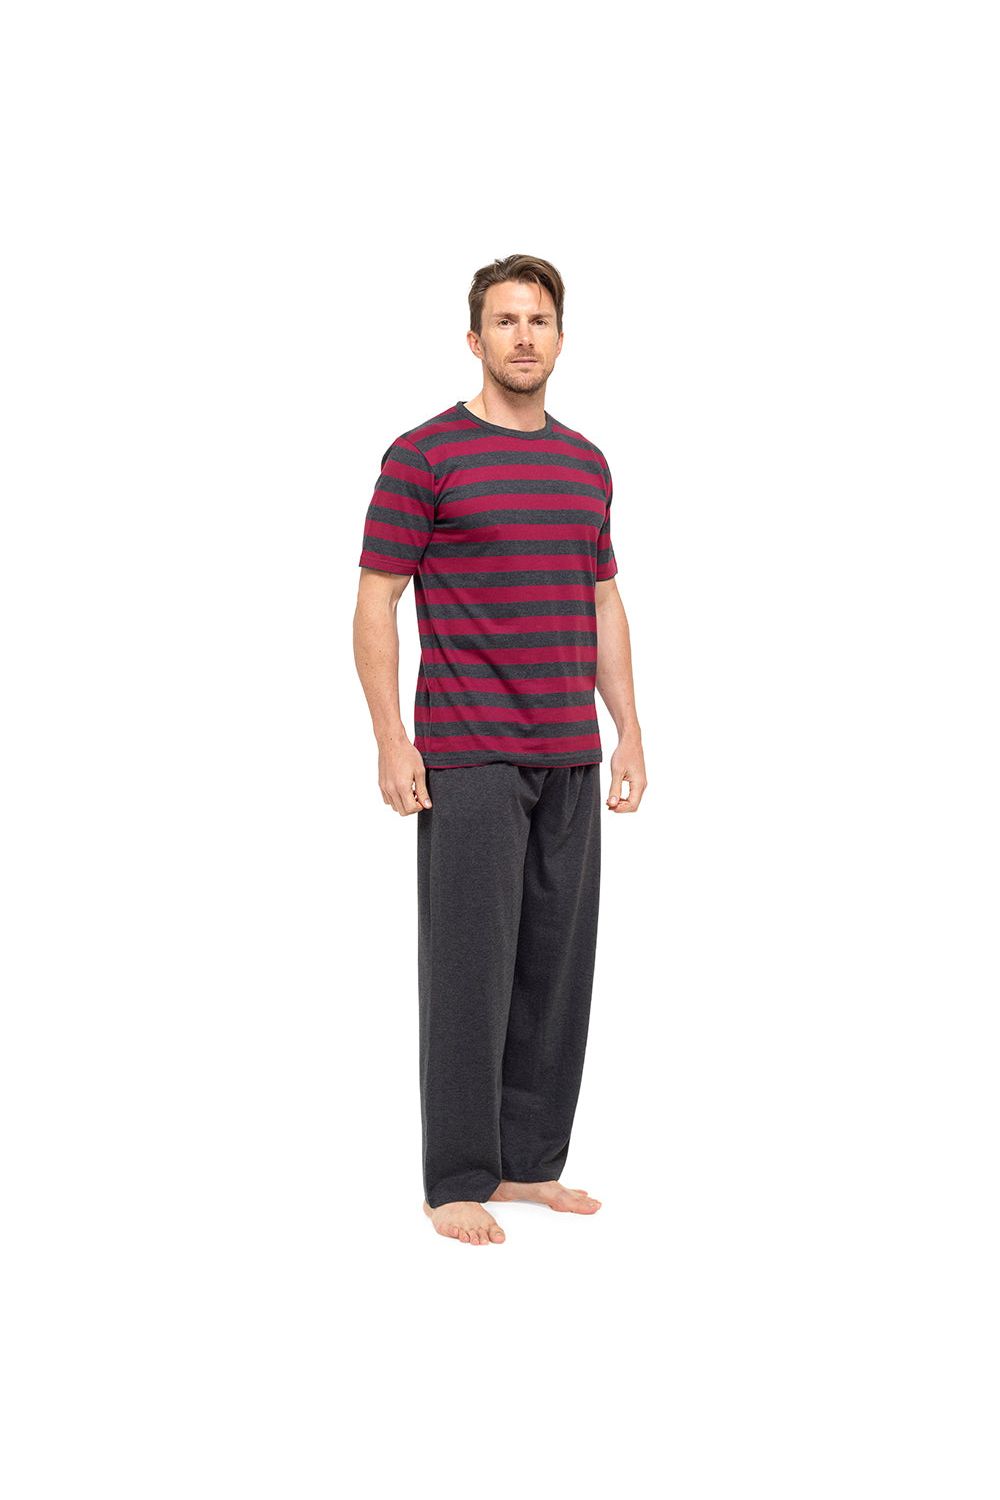 Tom Franks Mens Pyjama Set Short Sleeve Red Striped Top - Pyjamas.com